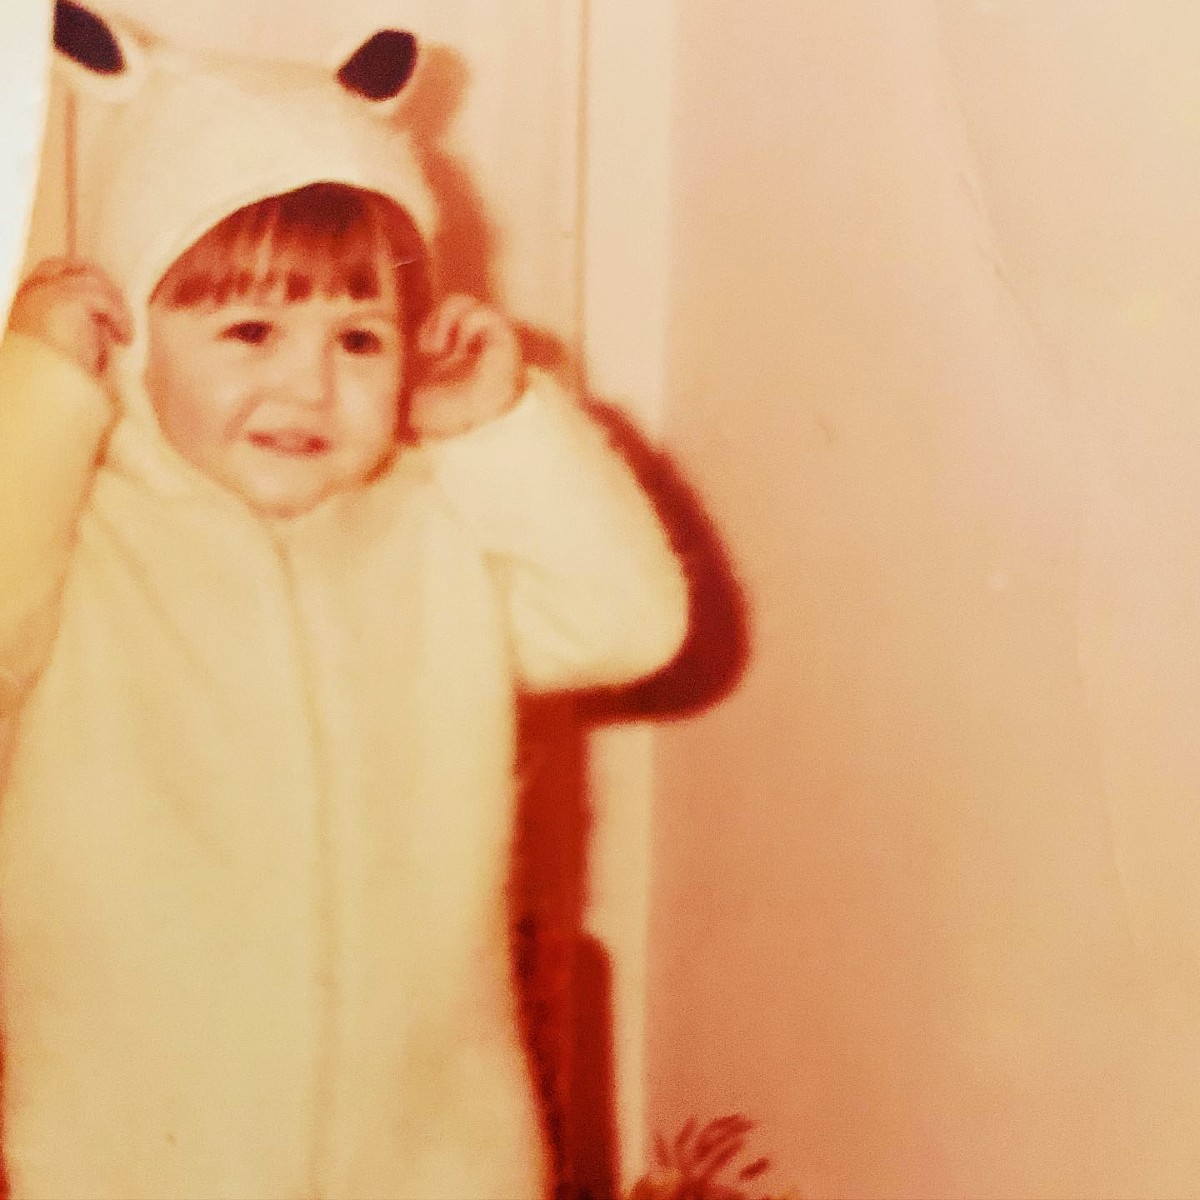 Η Τζένη Μπαλατσινού ντυμένη "κουνελάκι" σε παιδική ηλικία